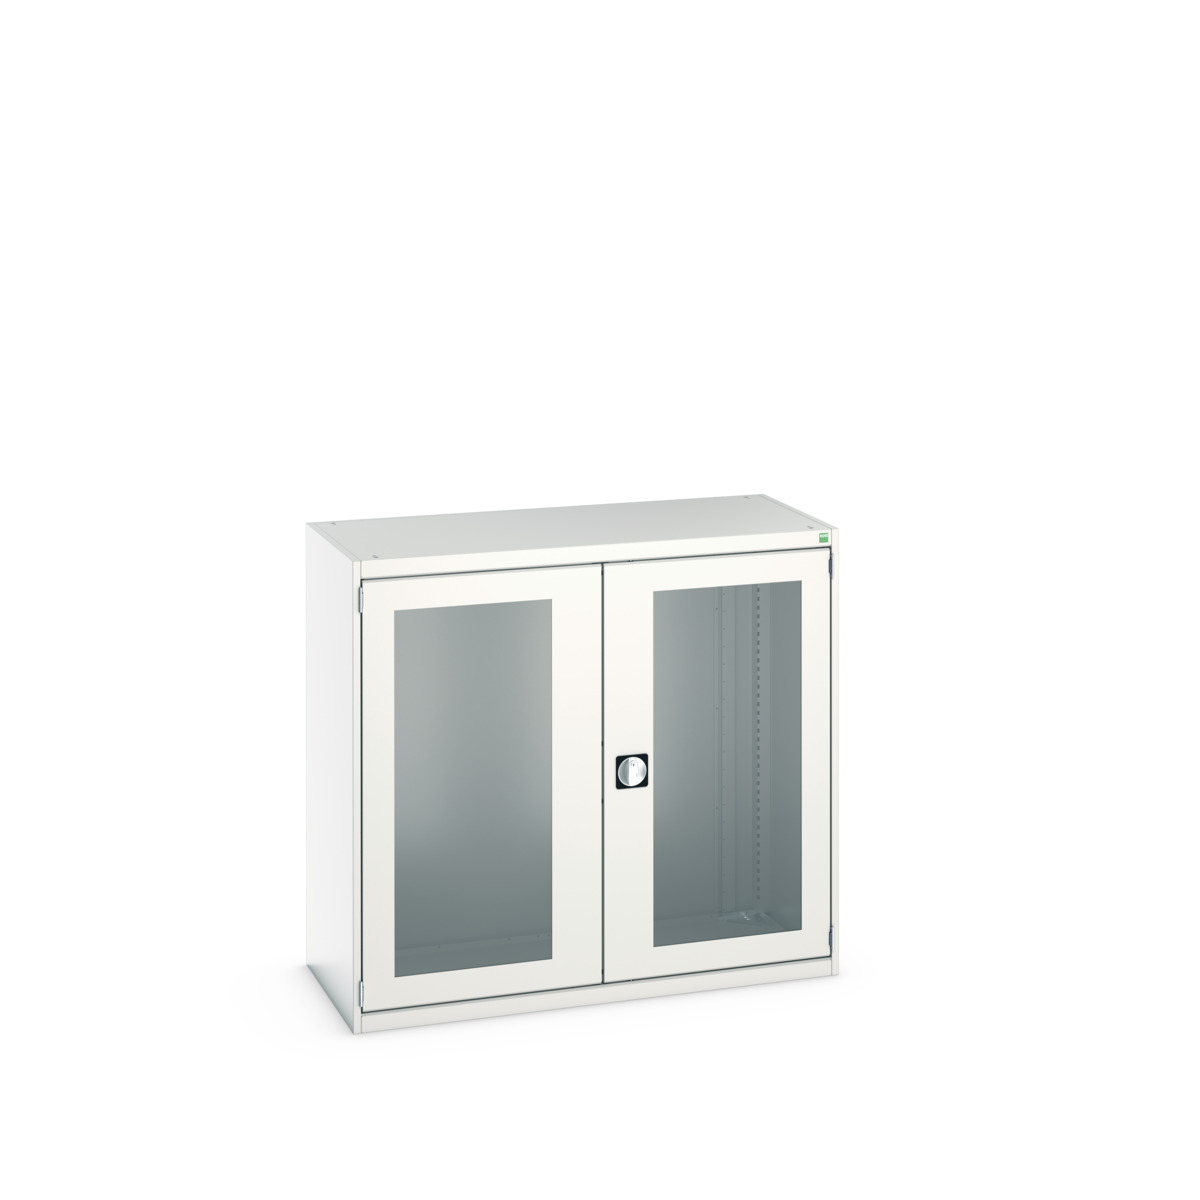 40022021.16V - cubio cupboard